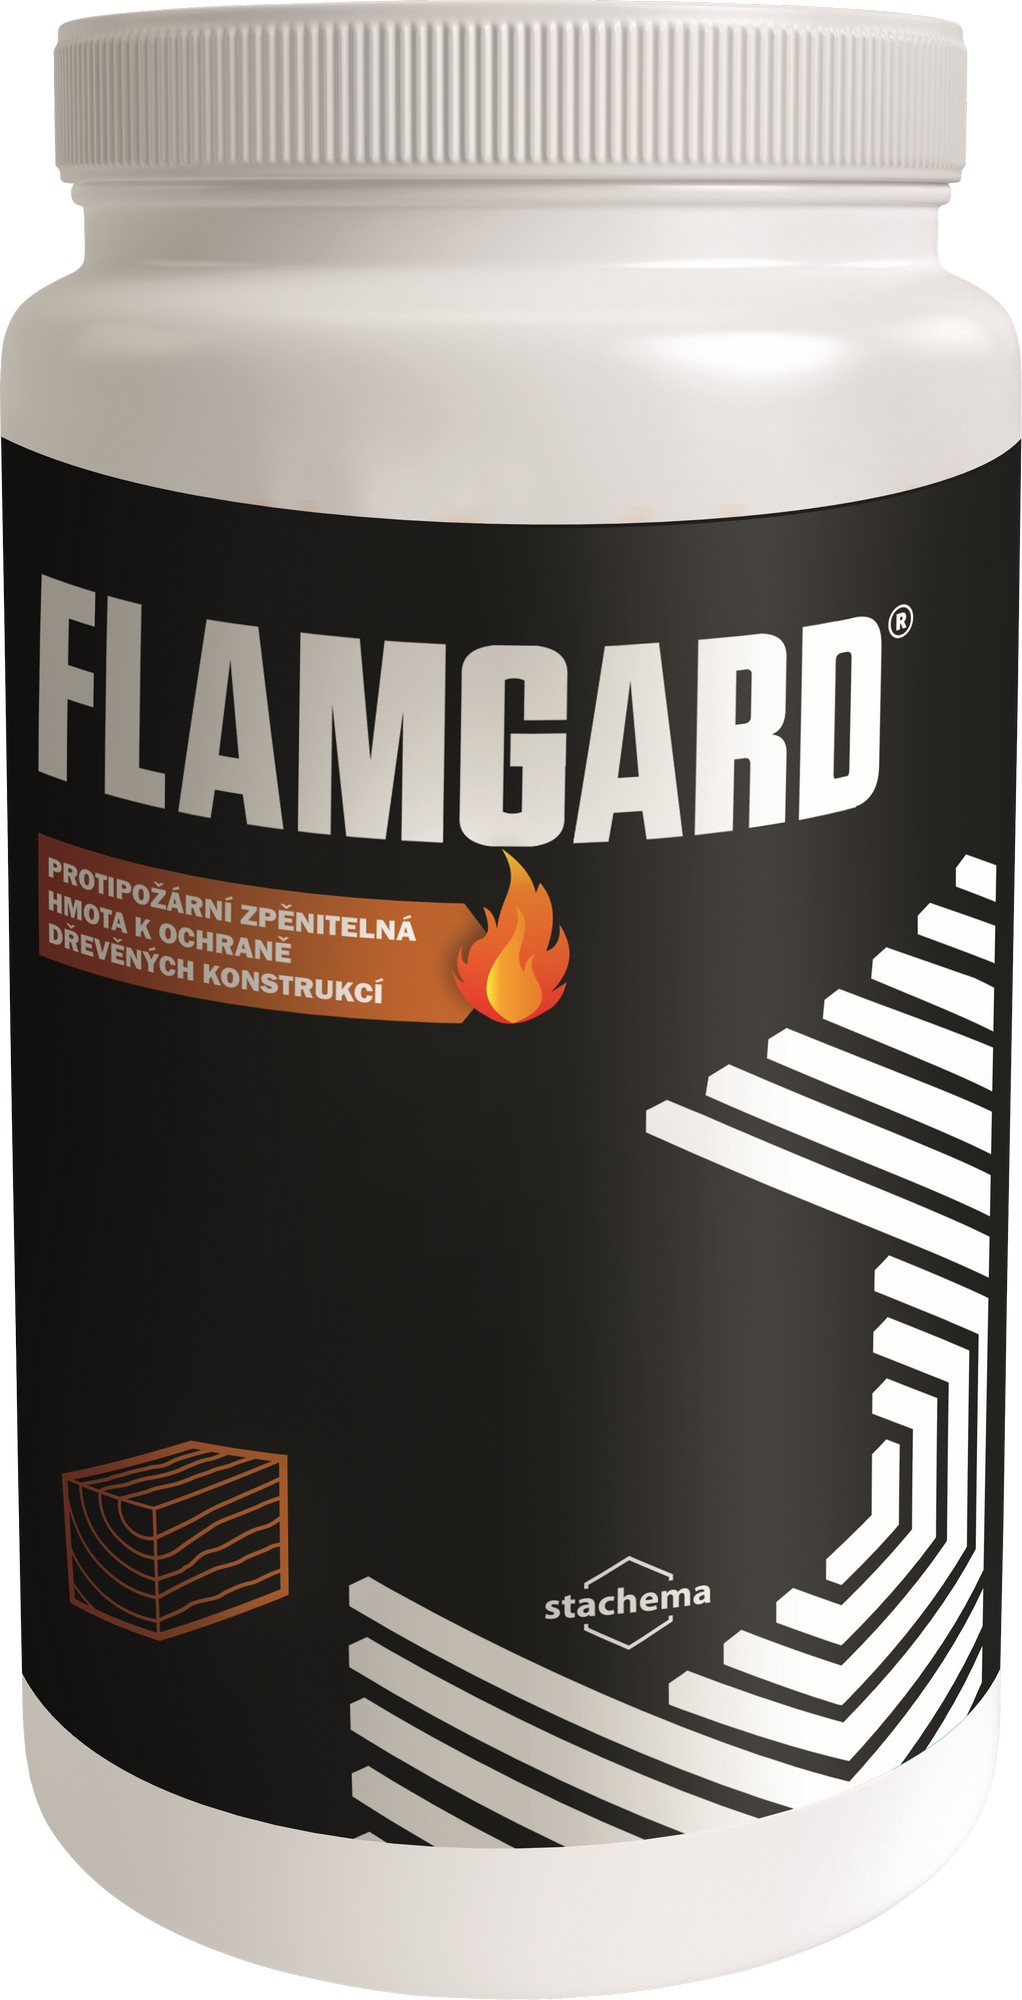 Nátěr protipožární Stachema FLAMGARD šedobílý, 10 kg